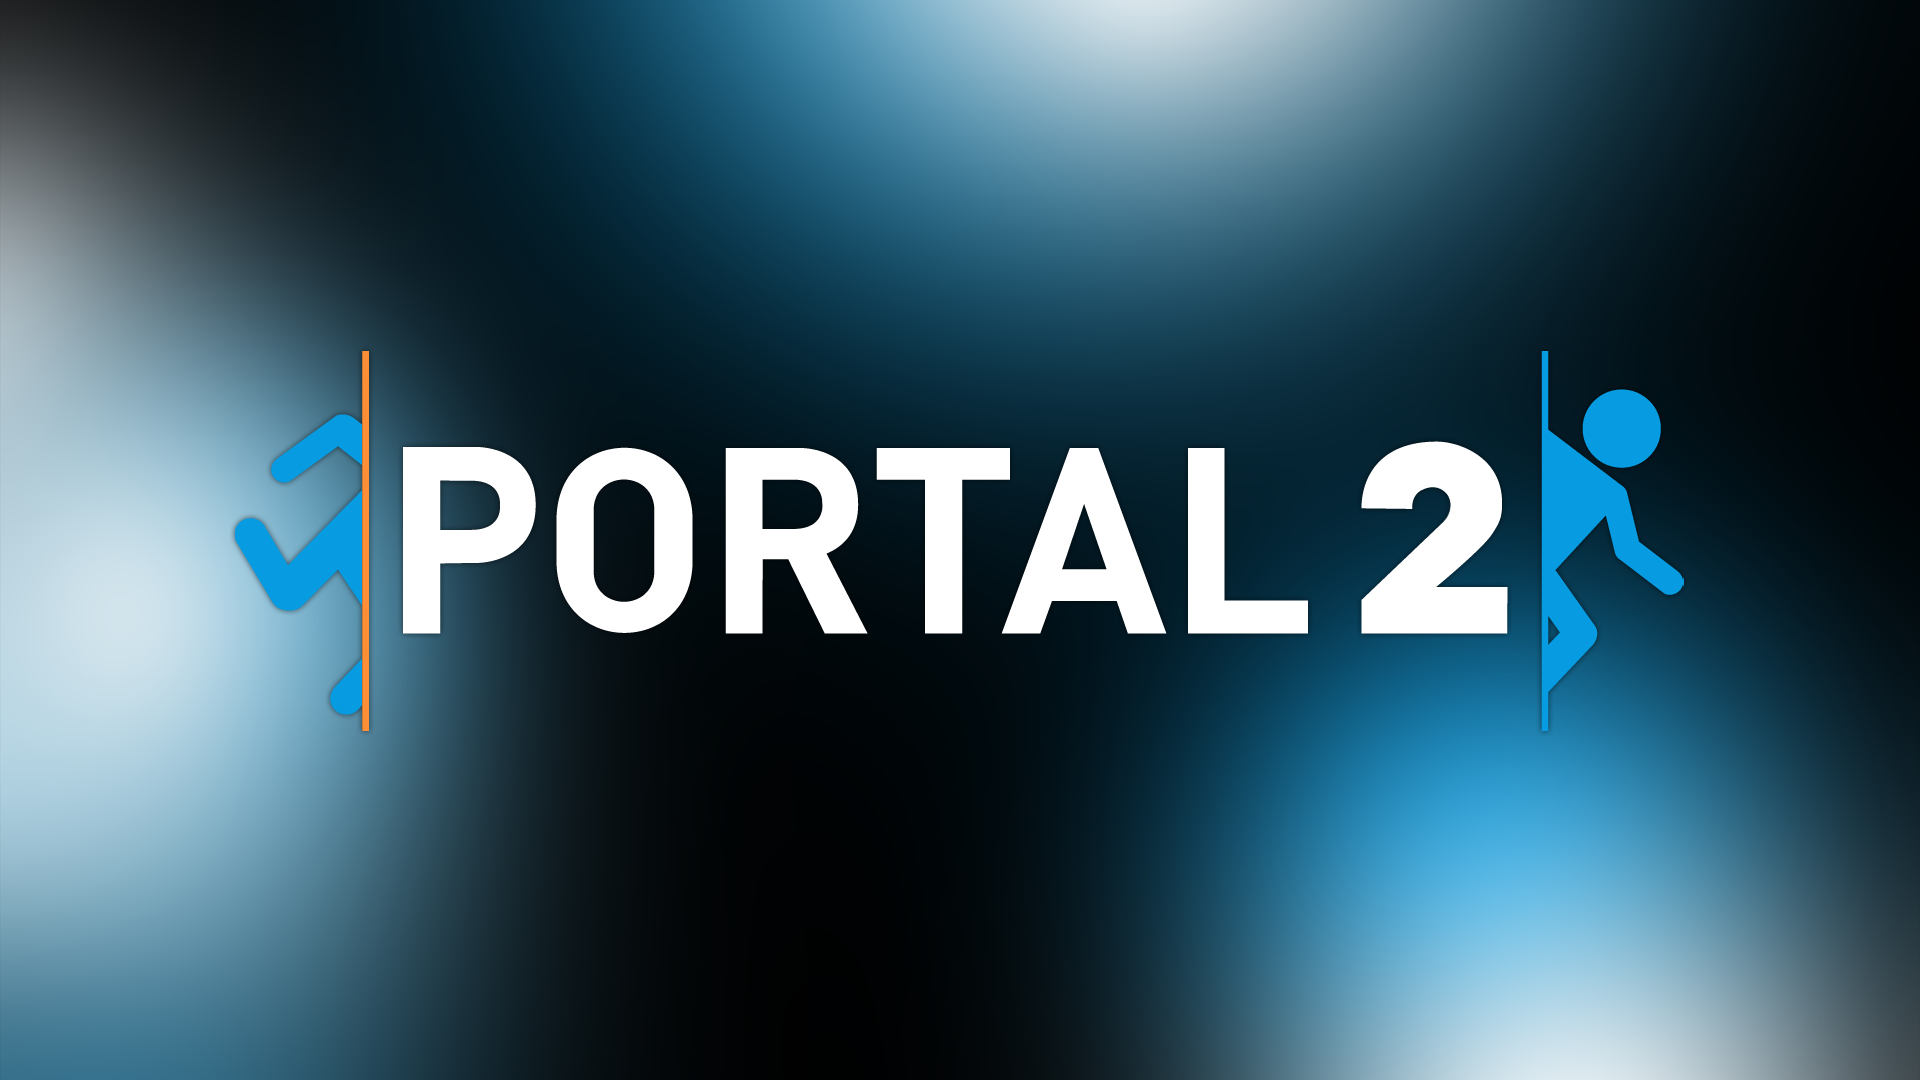 Portal 2 HD Wallpaper FullHDWpp   Full HD Wallpapers 1920x1080